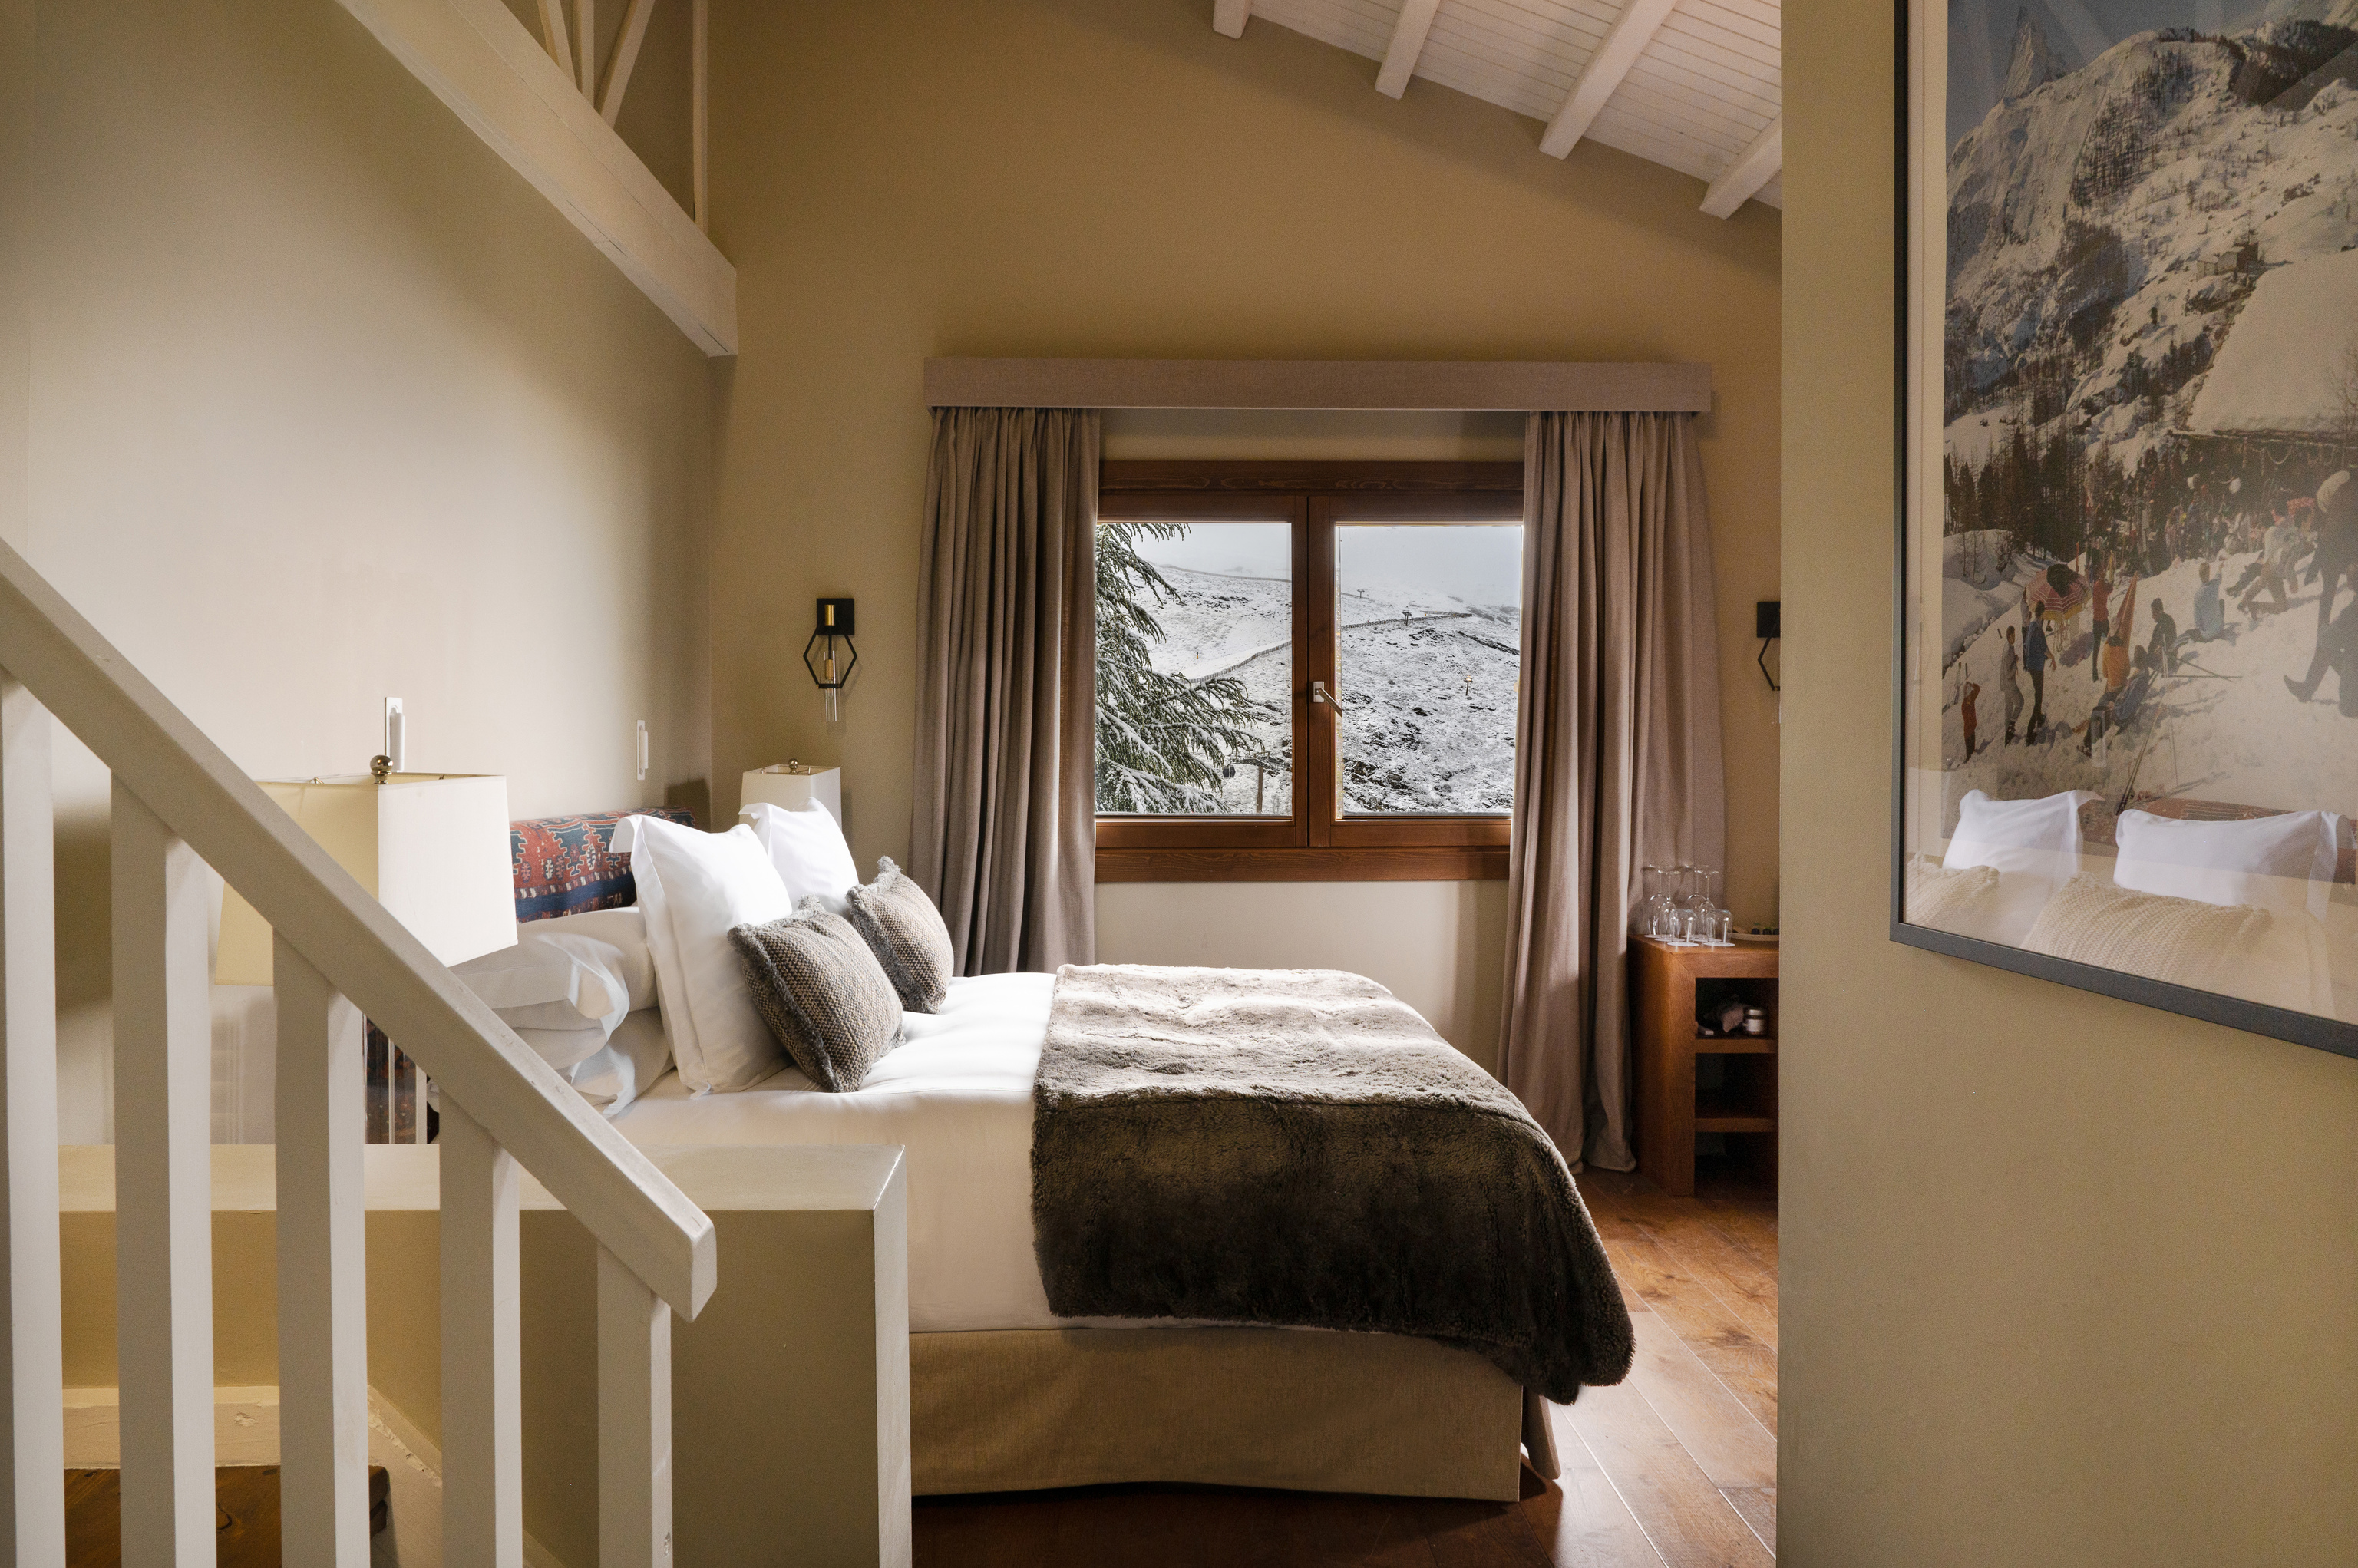 Una de las habitaciones del chalet alpino, con unas vistas de postal.